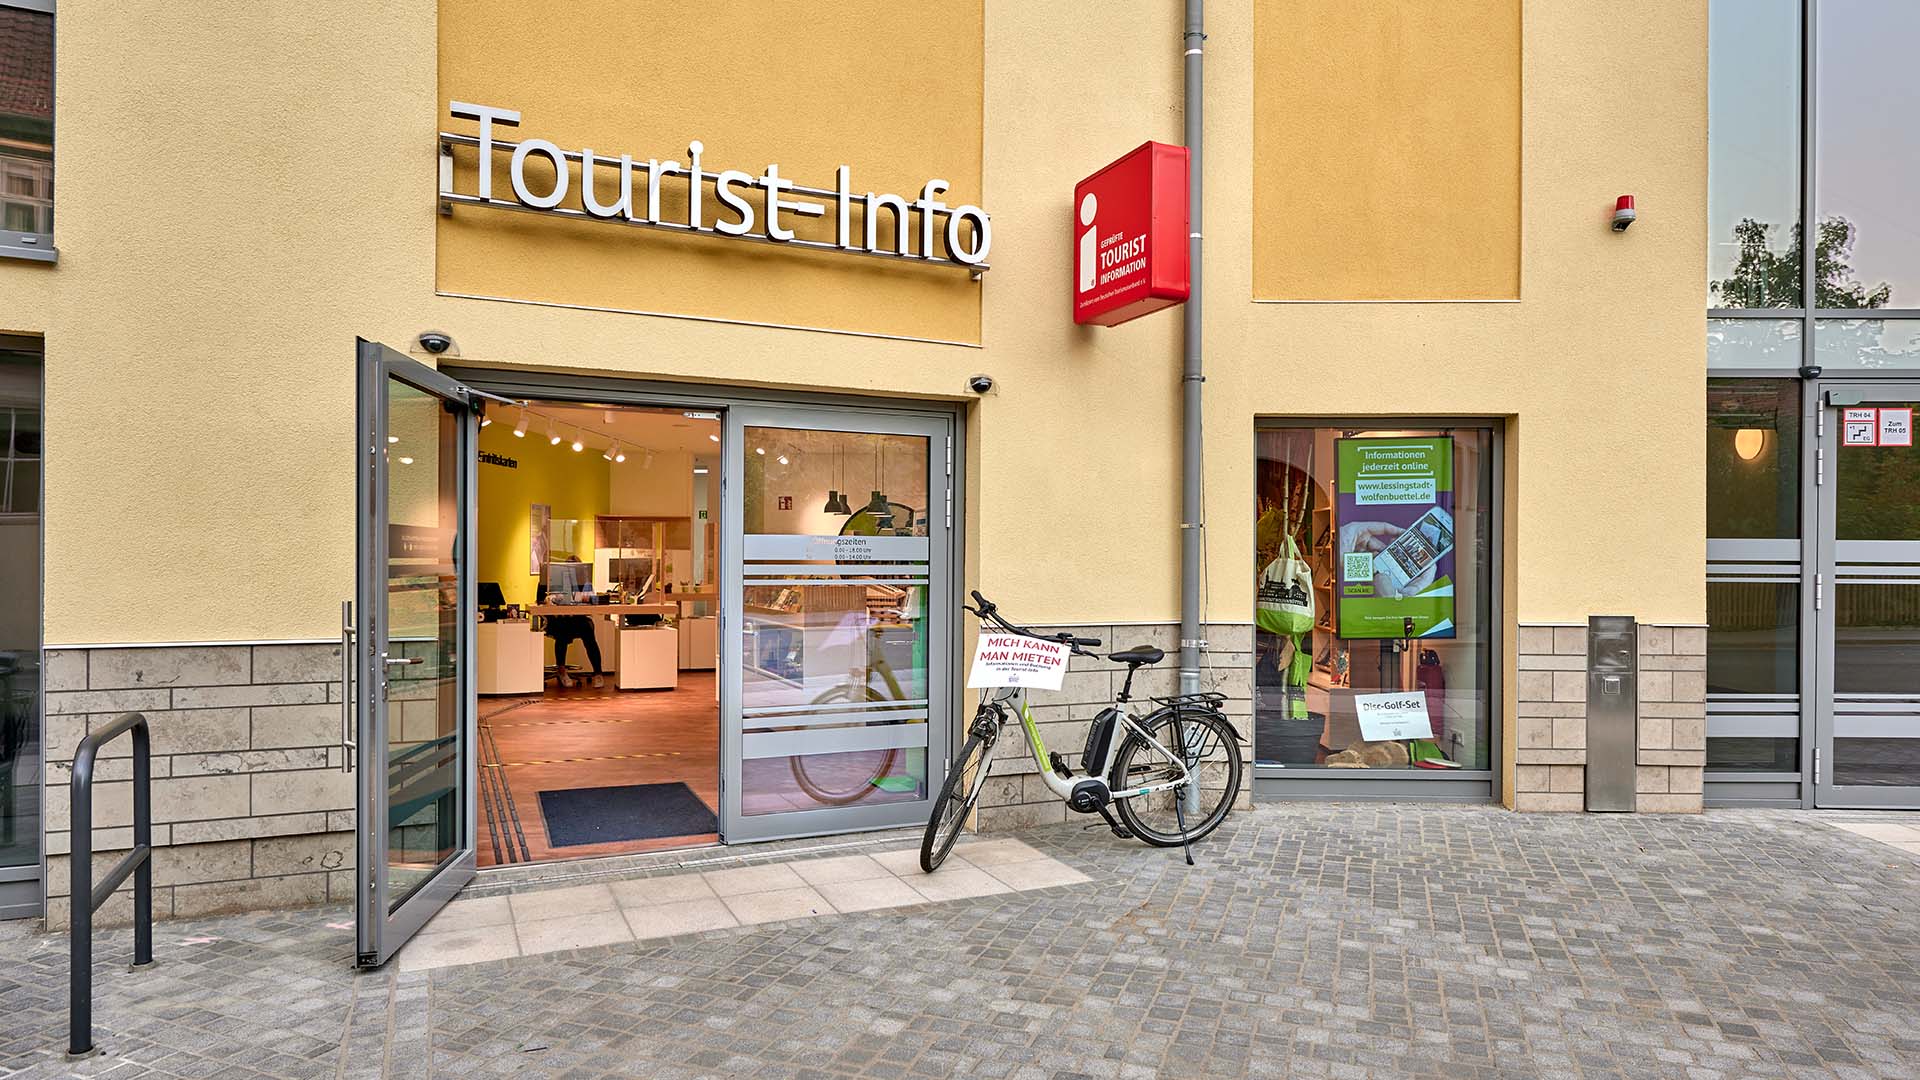 Link zur touristischen Internetseite Wolfenbüttels, Bereich Tourist-Information. - Bildmotiv: Blick auf eine Hausfront, die große Eingangstür aus Glas ist geöffnet, davor steht ein Fahrrad, das man leihen kann. Über der Tür steht Tourist-Info